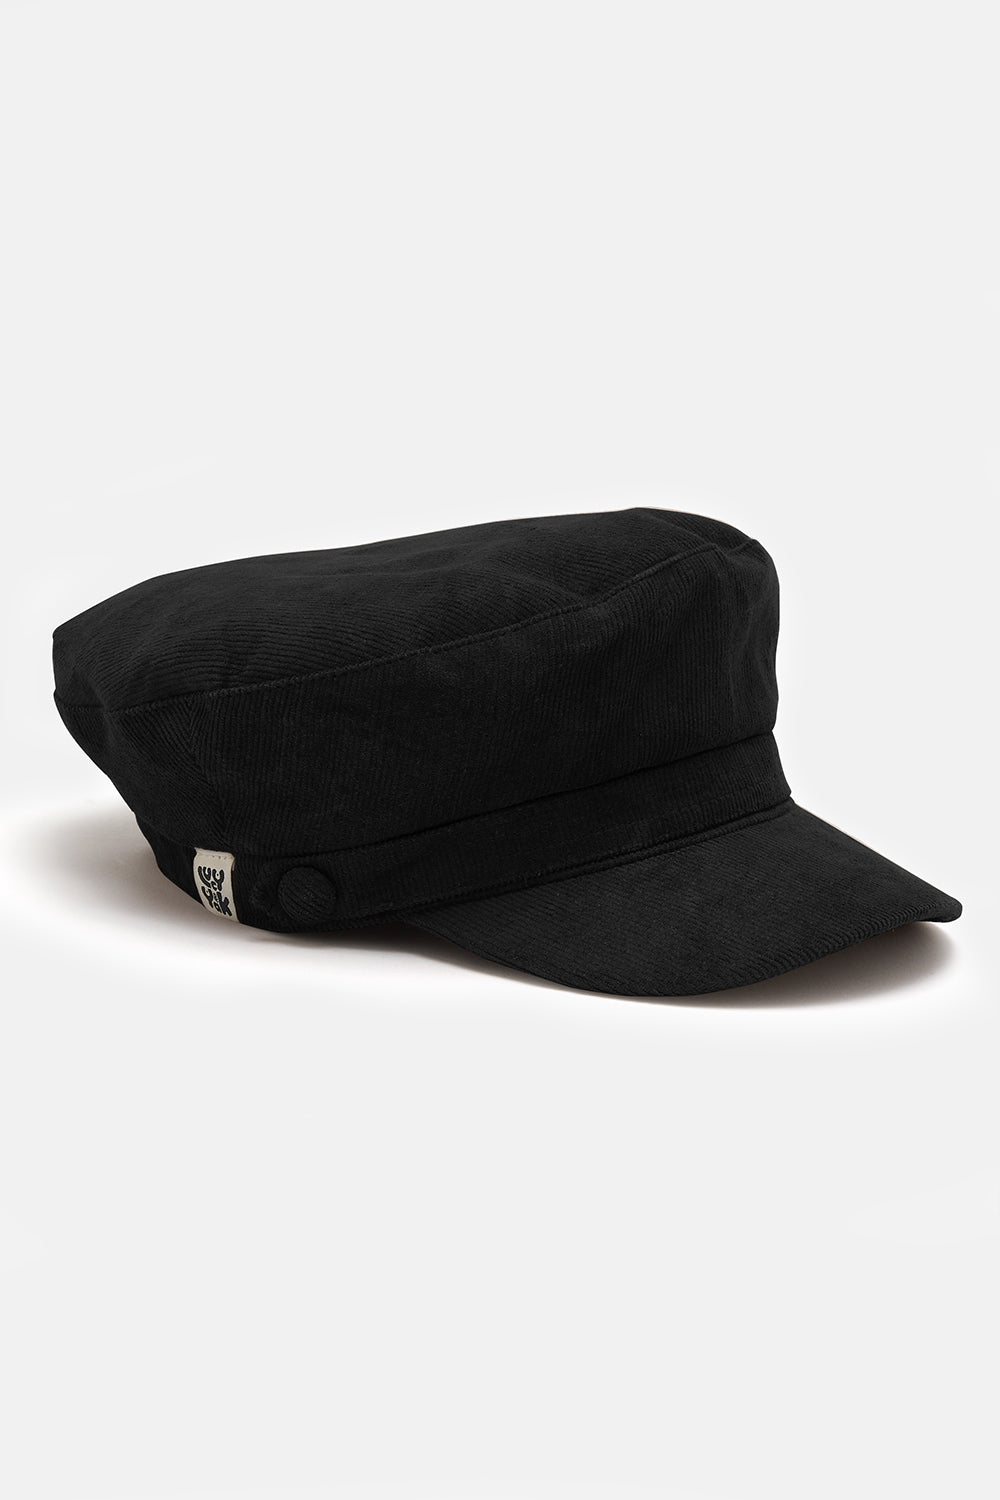 Louis Vuitton LV Iconic Cap Black Cotton. Size M